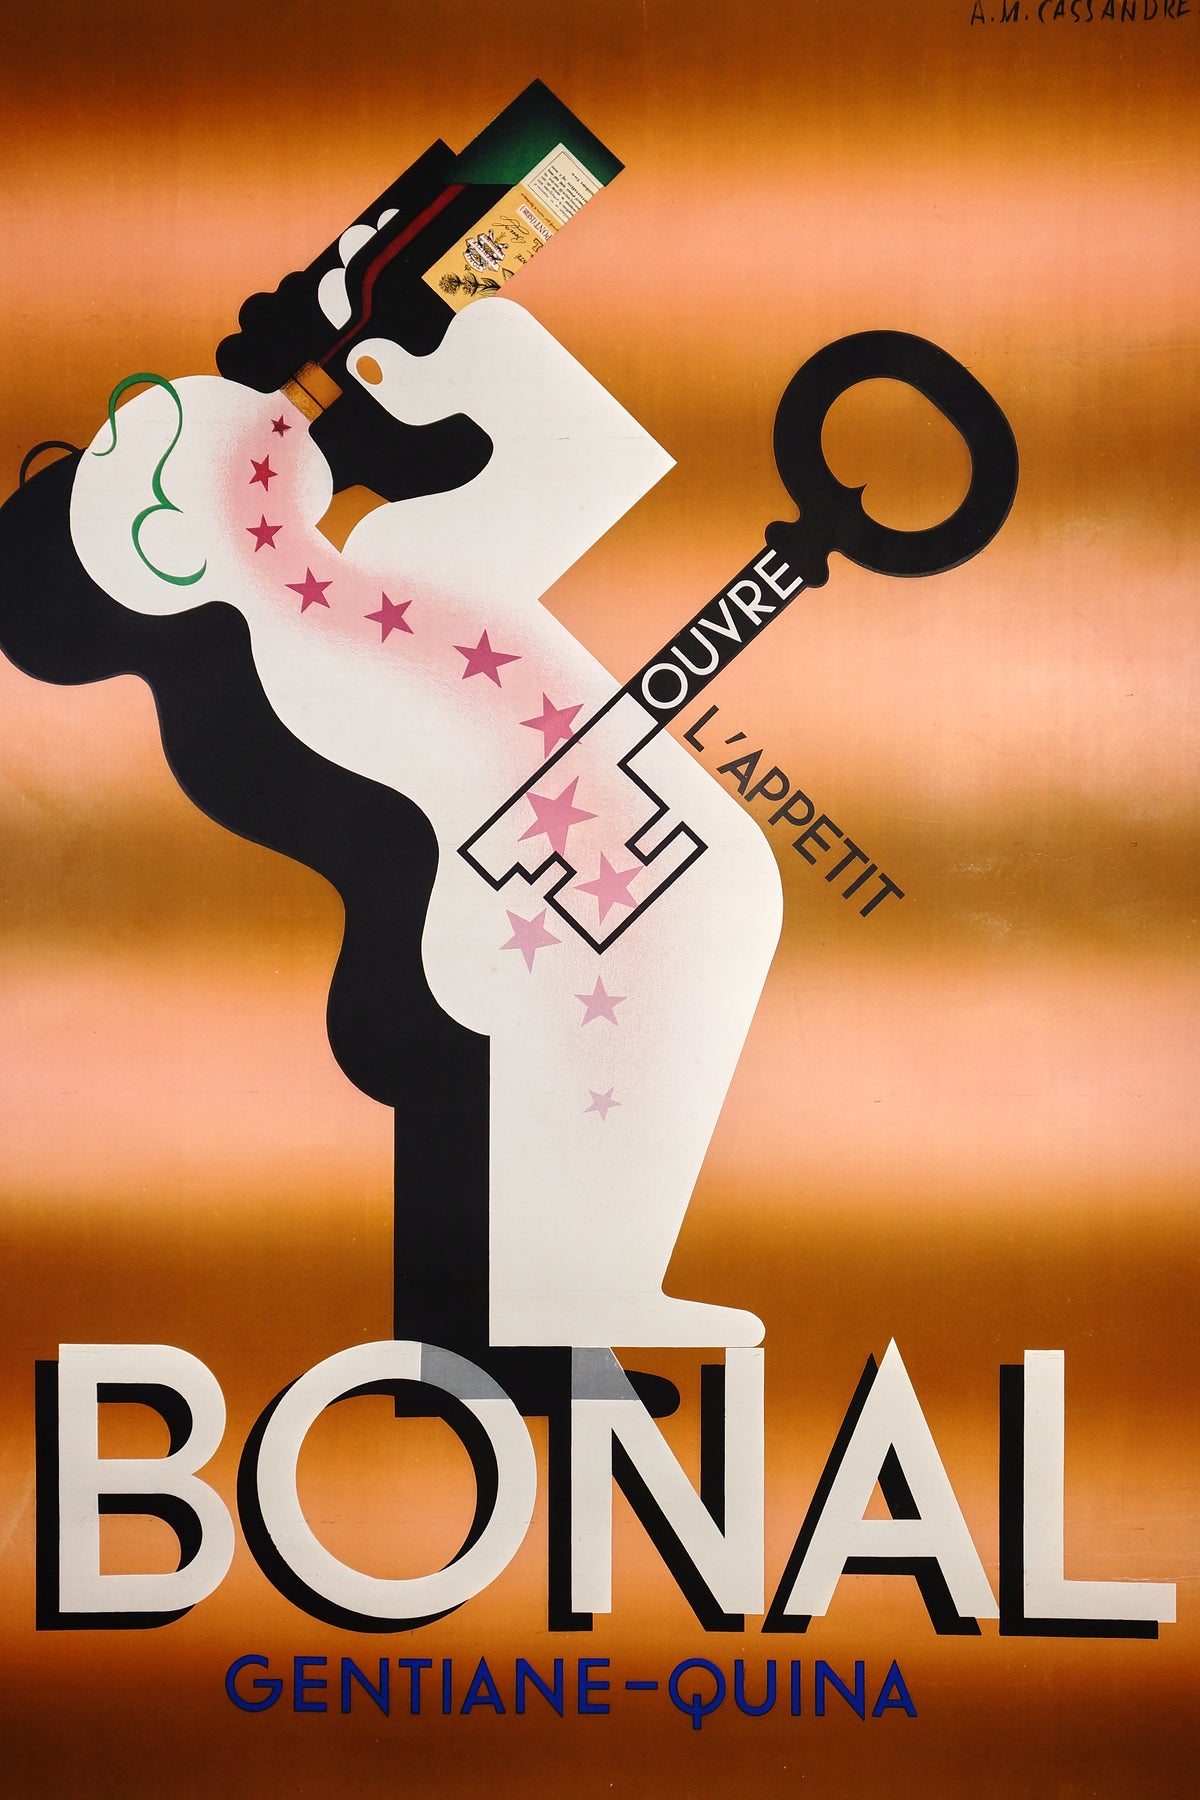 Bonal by Cassandre - Authentic Vintage Poster